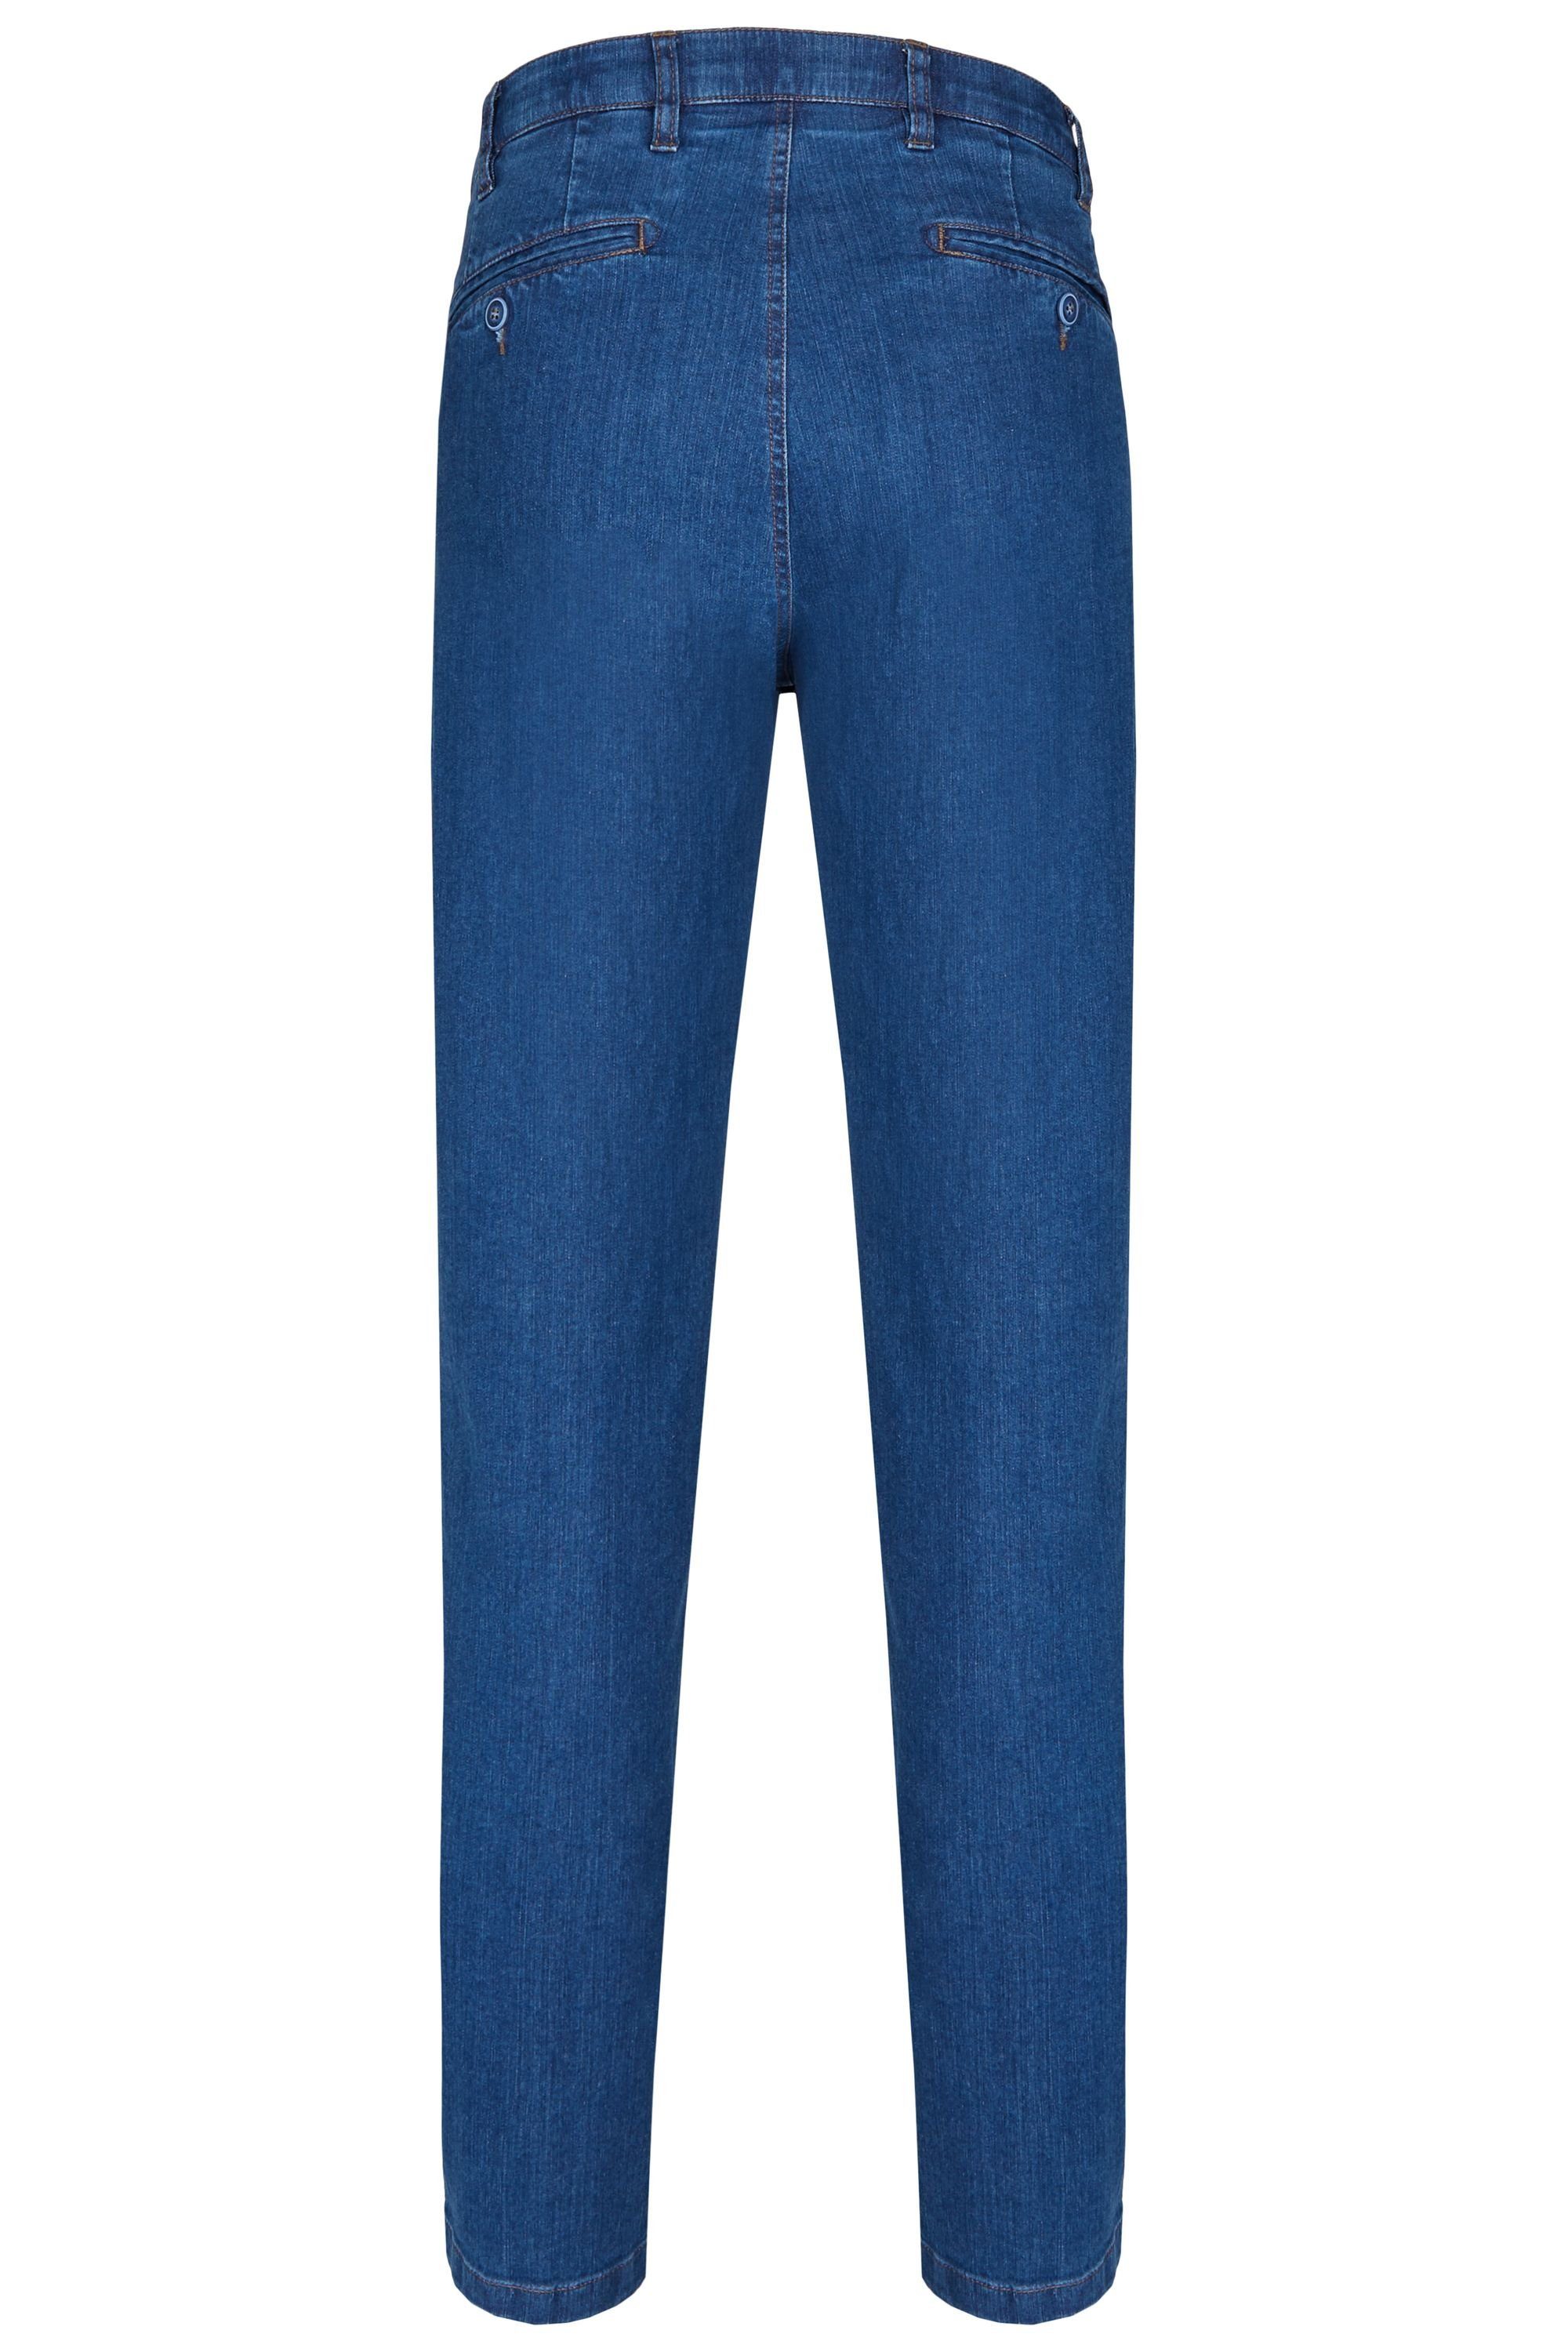 Modell aus Jeans Hose Stretch stone (46) High Herren Ganzjahres aubi Bequeme Fit Flex Baumwolle aubi: 577 Jeans Perfect